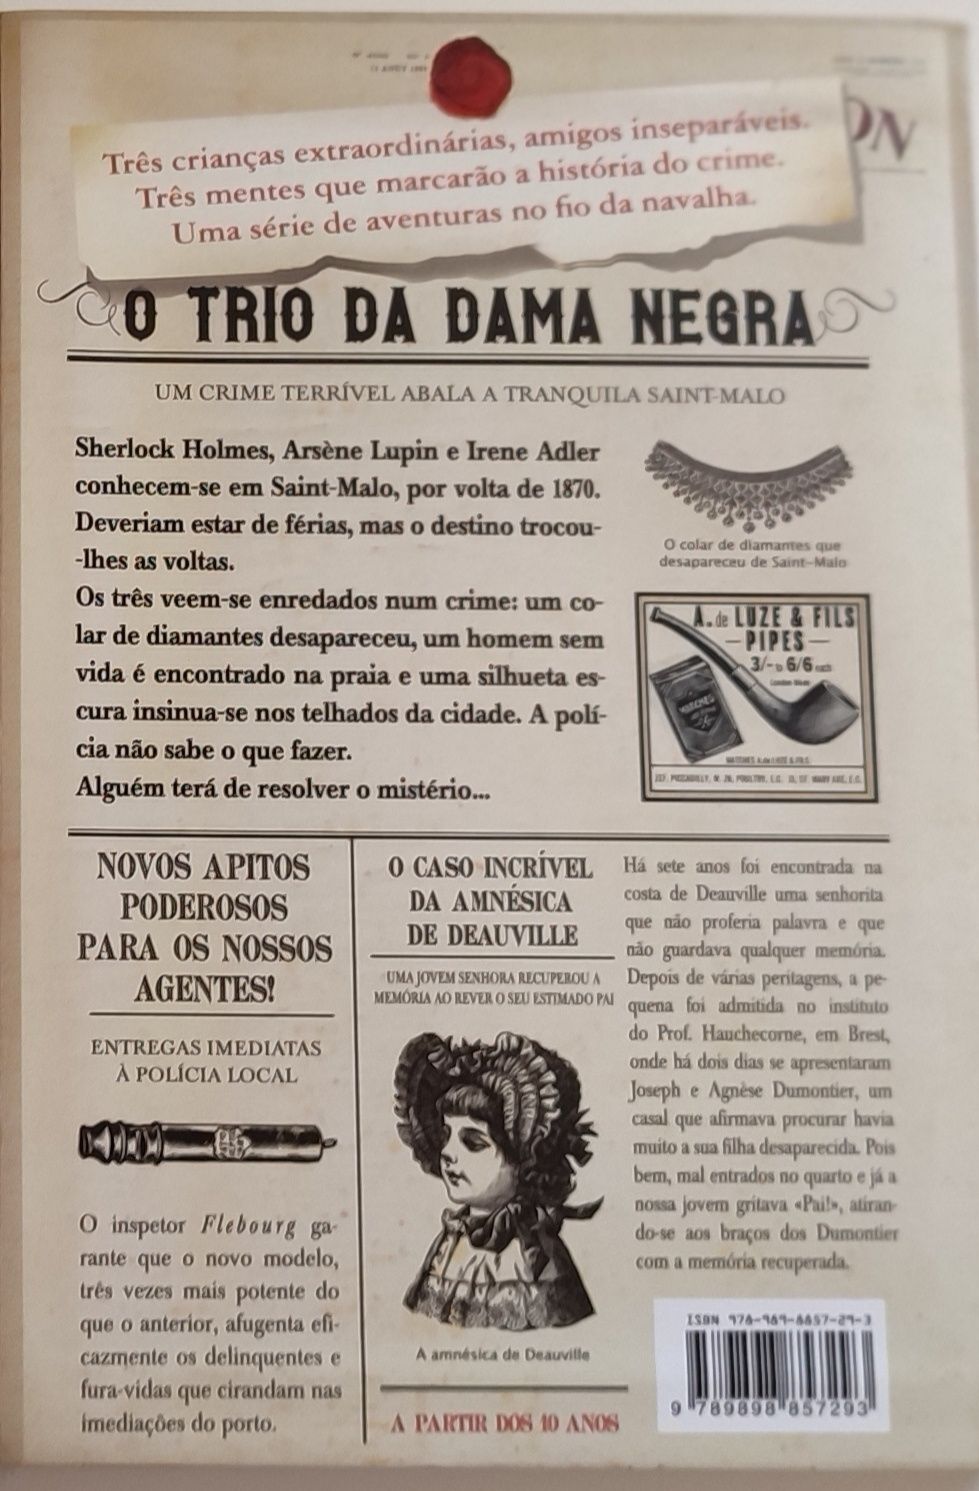 Livro "O trio da dama negra" (PNL)